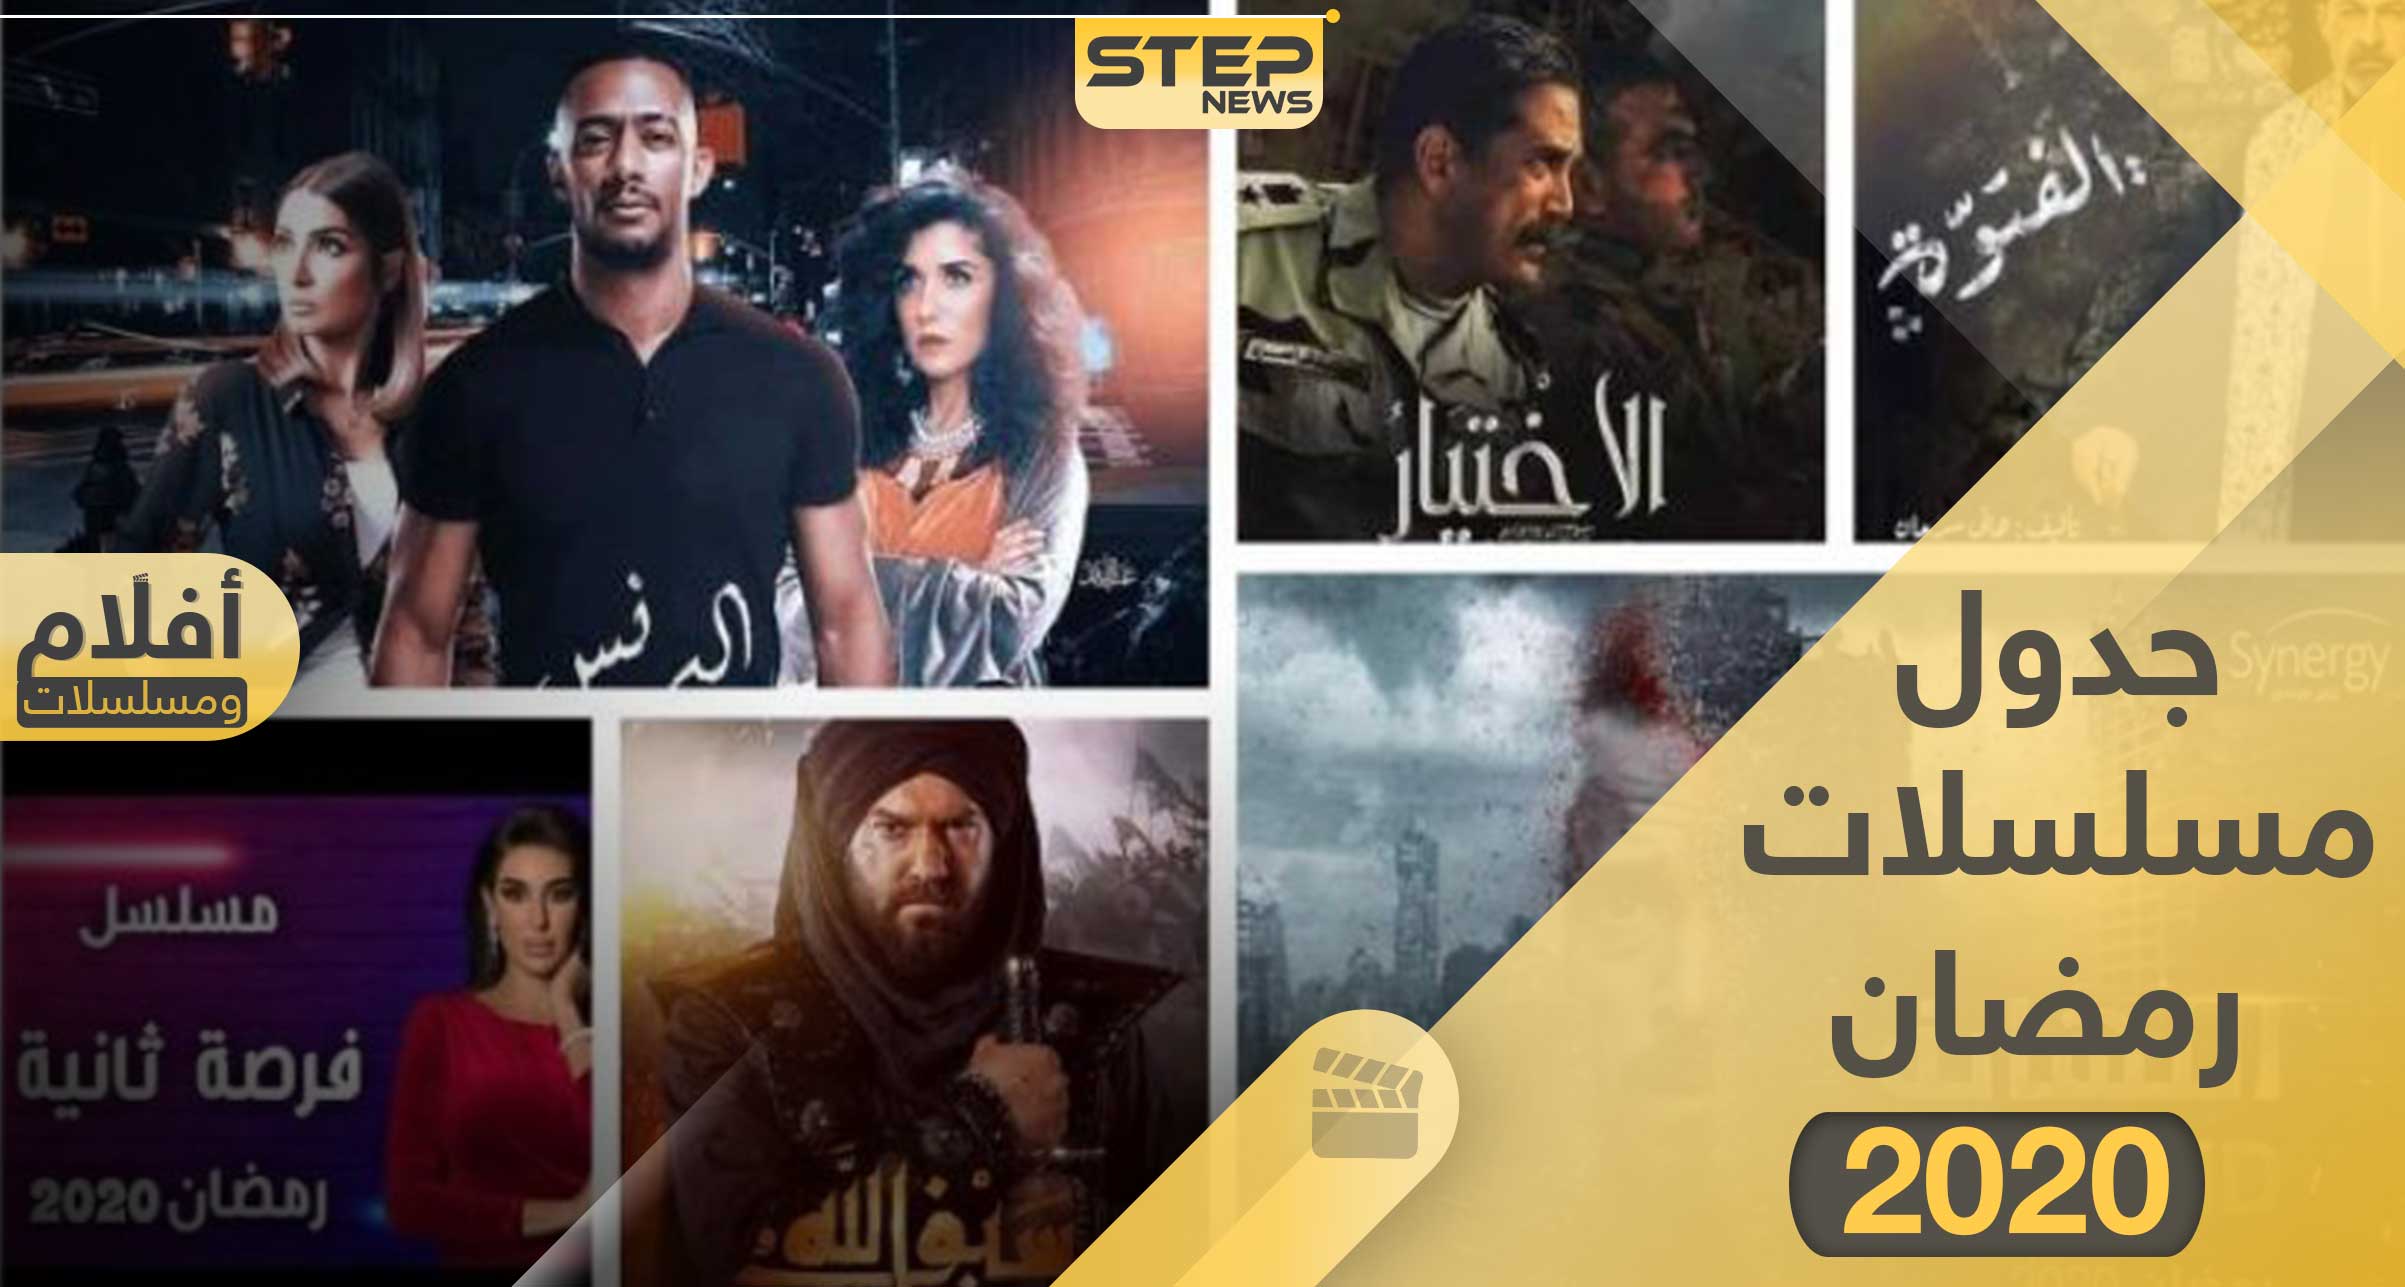 جدول مسلسلات رمضان 2020 وقنوات العرض وكالة ستيب الإخبارية